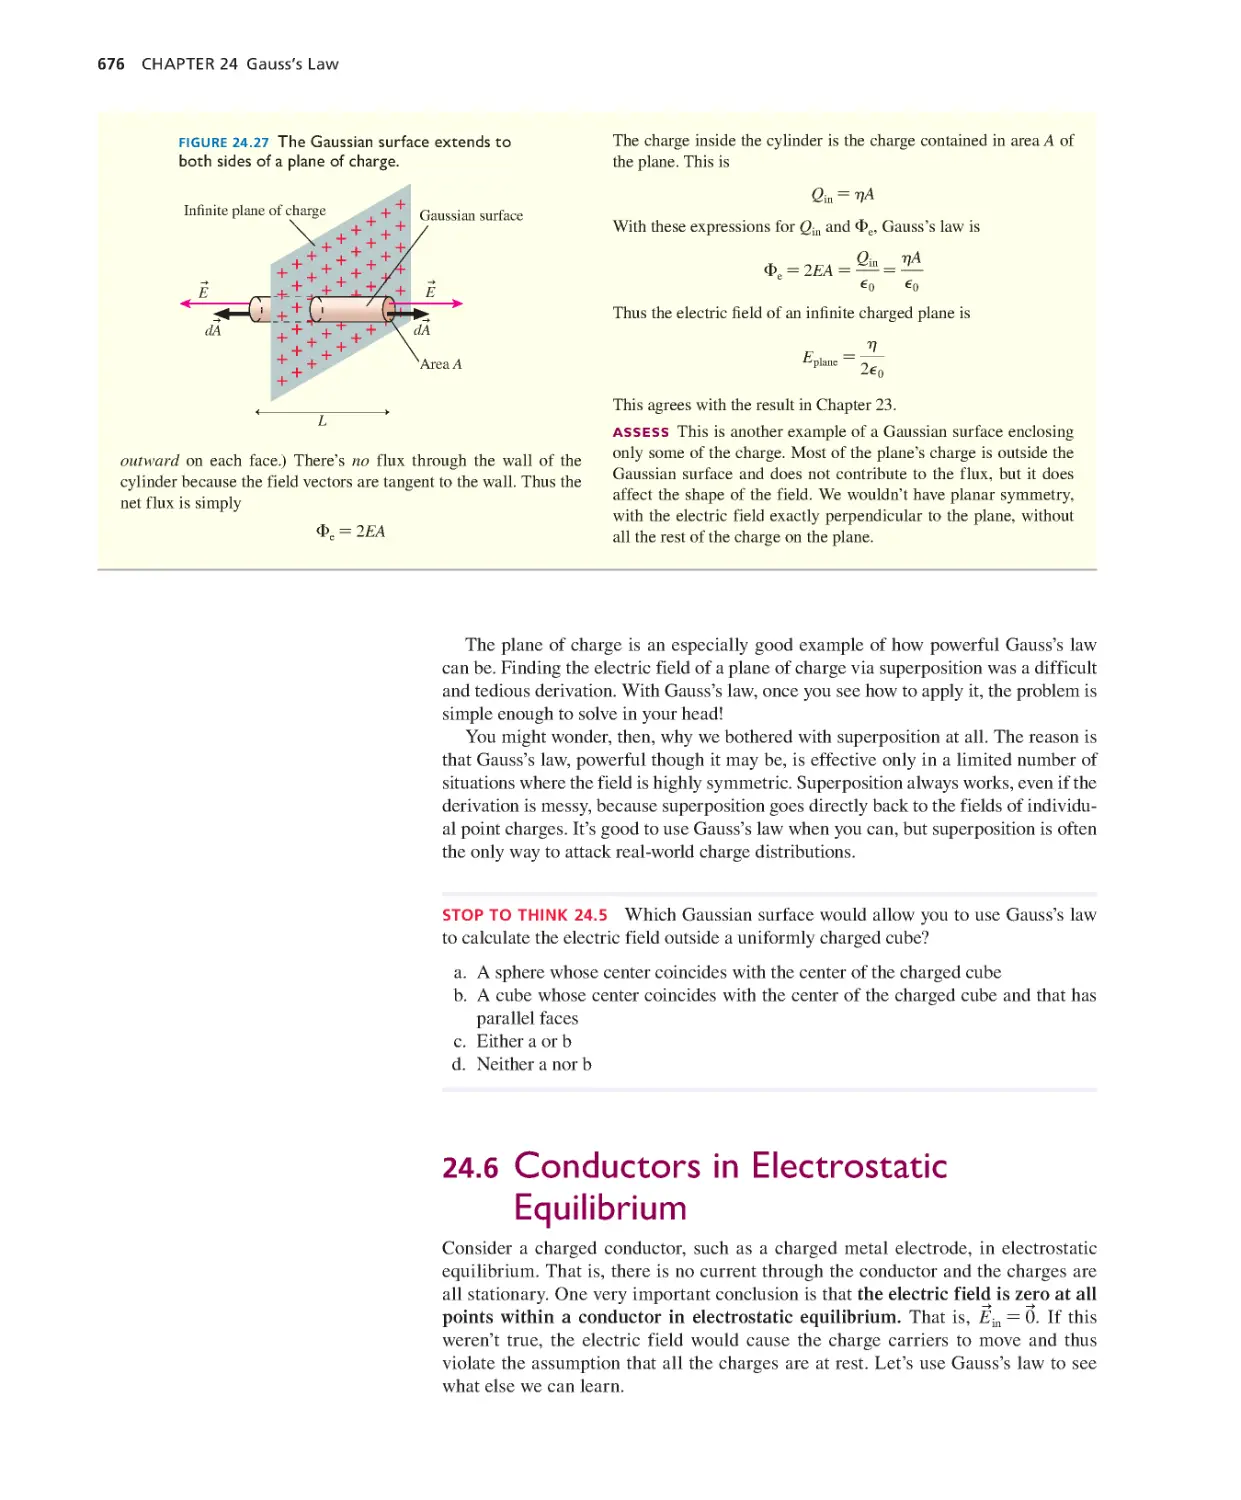 24.6. Conductors in Electrostatic Equilibrium